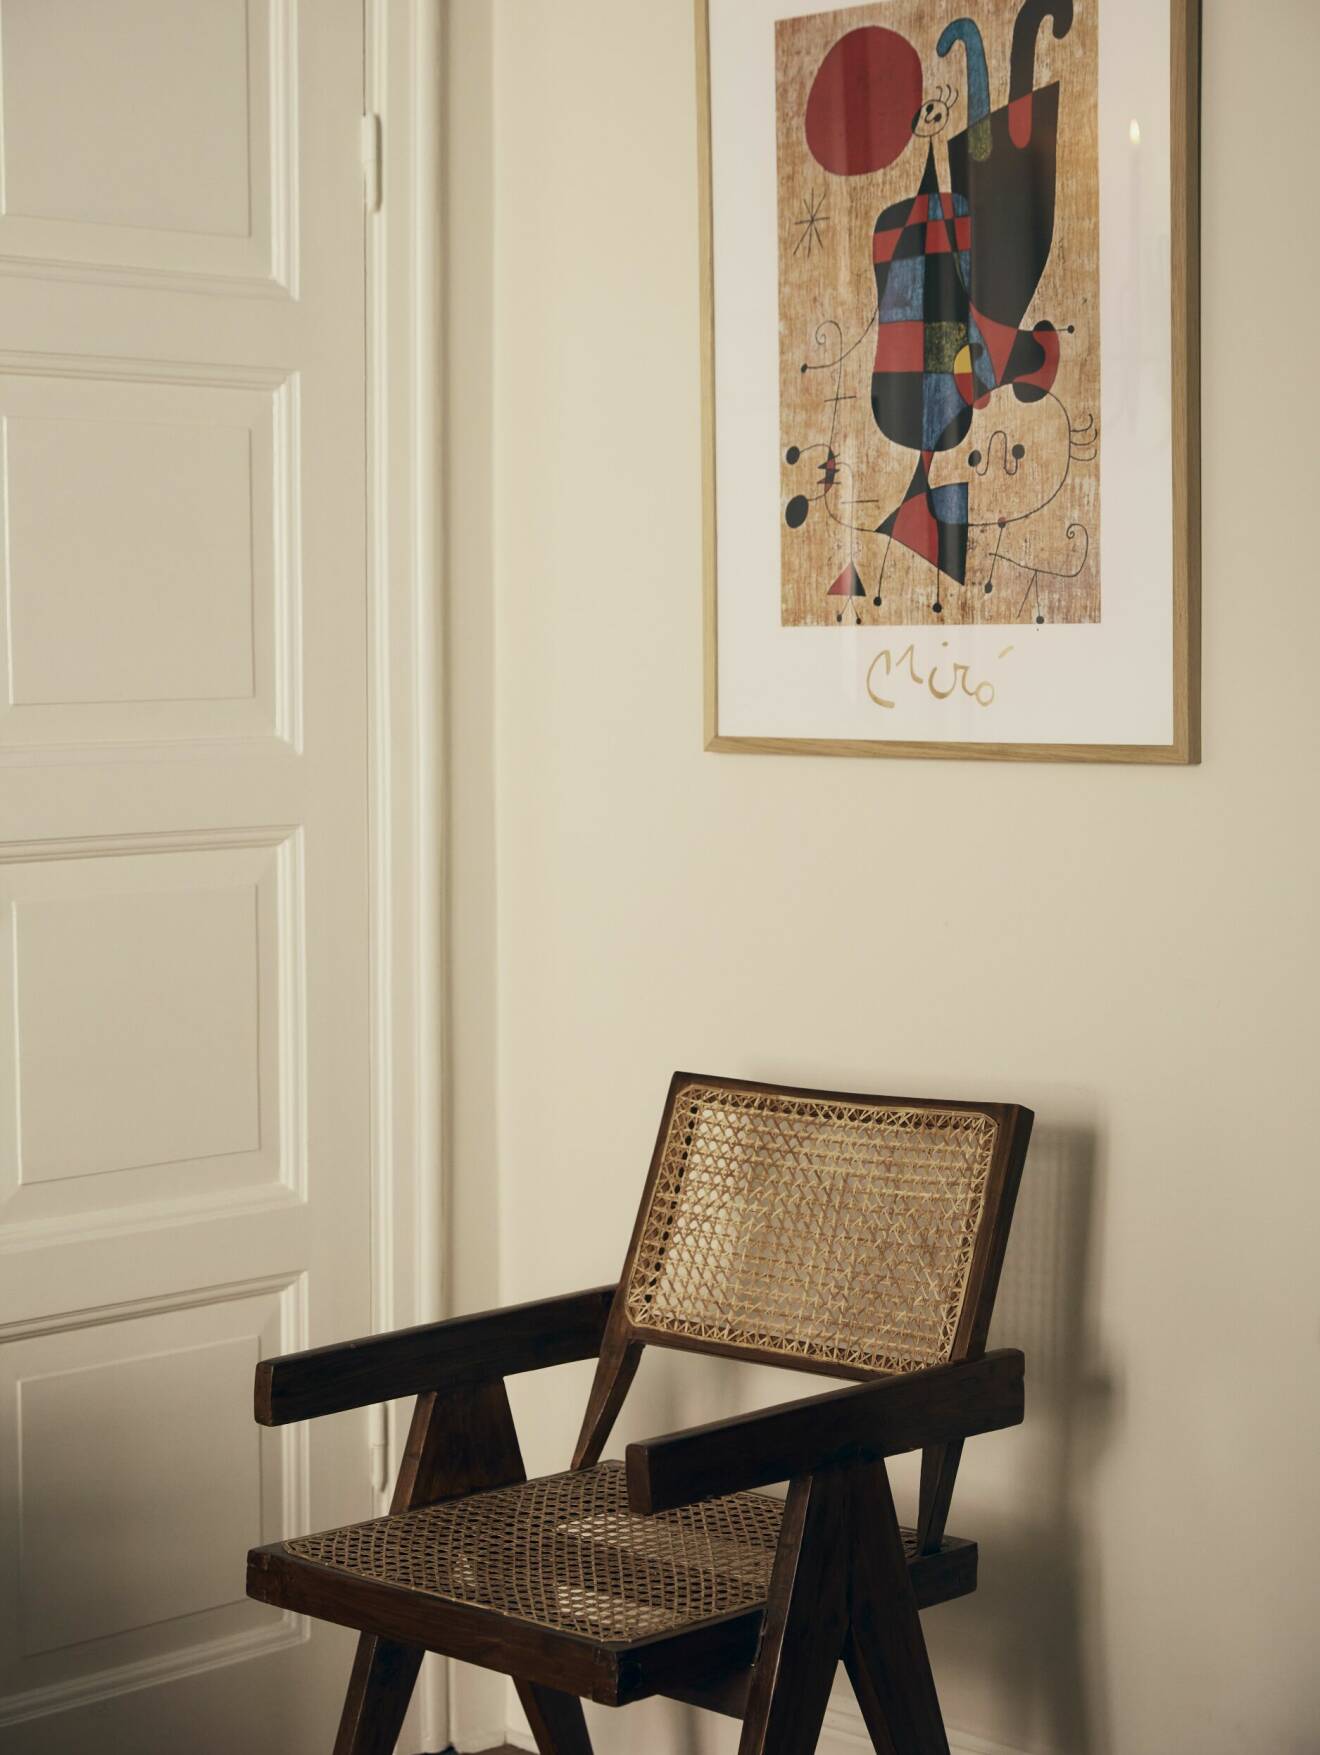 Karmstol av Pierre Jeanneret och tavla av Miró